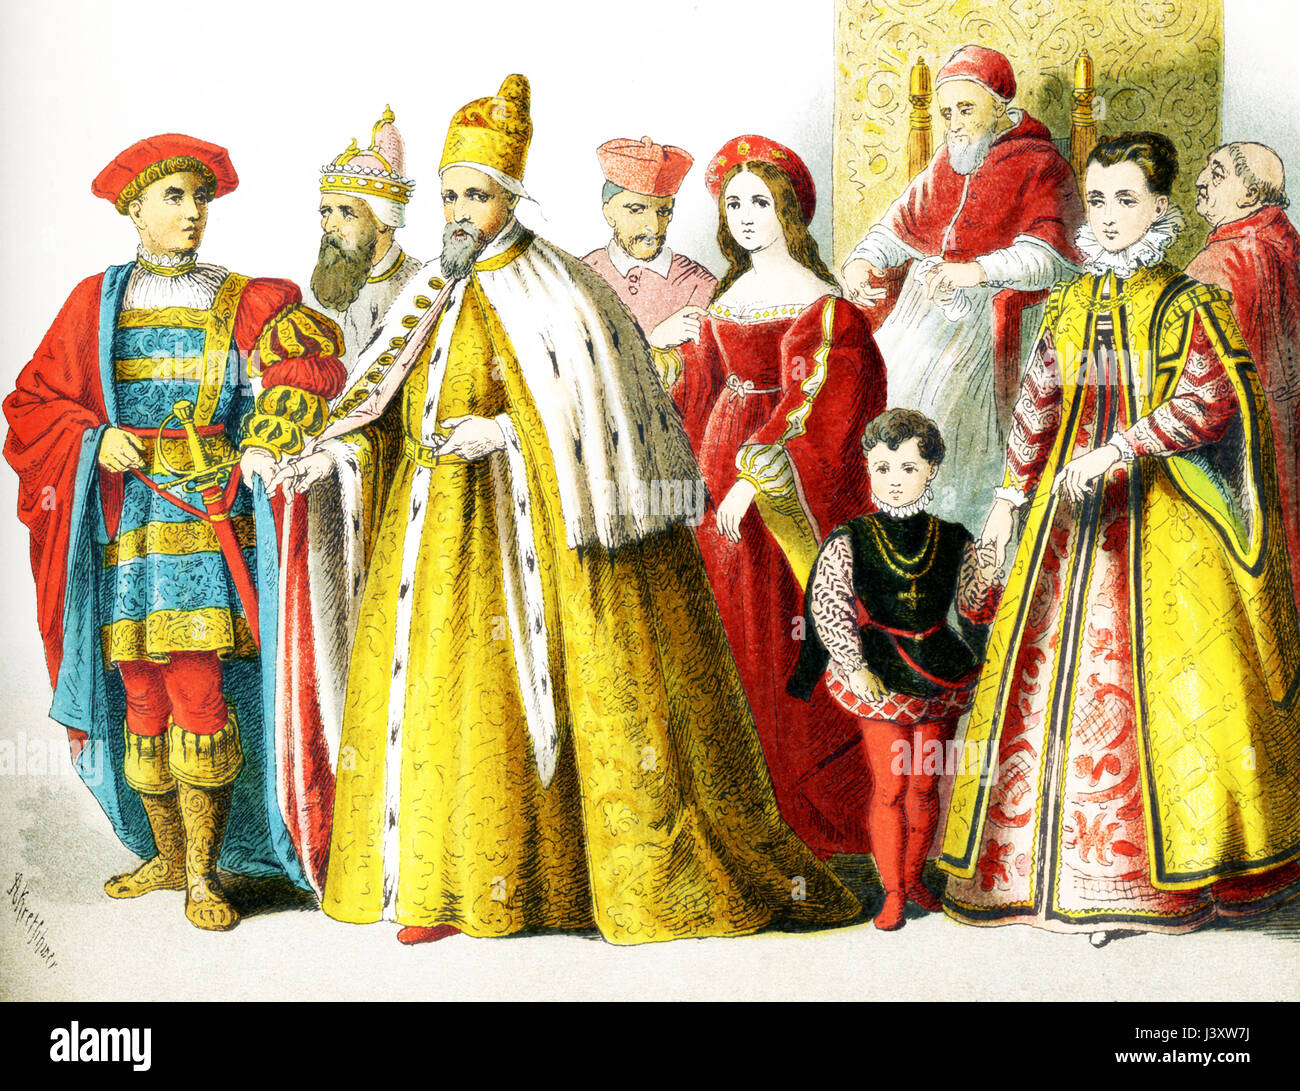 Les chiffres ci-dessus représentent les Italiens autour de 1500 A.D. Ils sont de gauche à droite : un homme de rang, Doge de Venise, le Doge de Venise, le cardinal en robe de chambre, la femme de rang, le Pape en maison-dress : Jules II, femme de rang avec son fils, le cardinal en robe de chambre. L'illustration dates à 1882. Banque D'Images